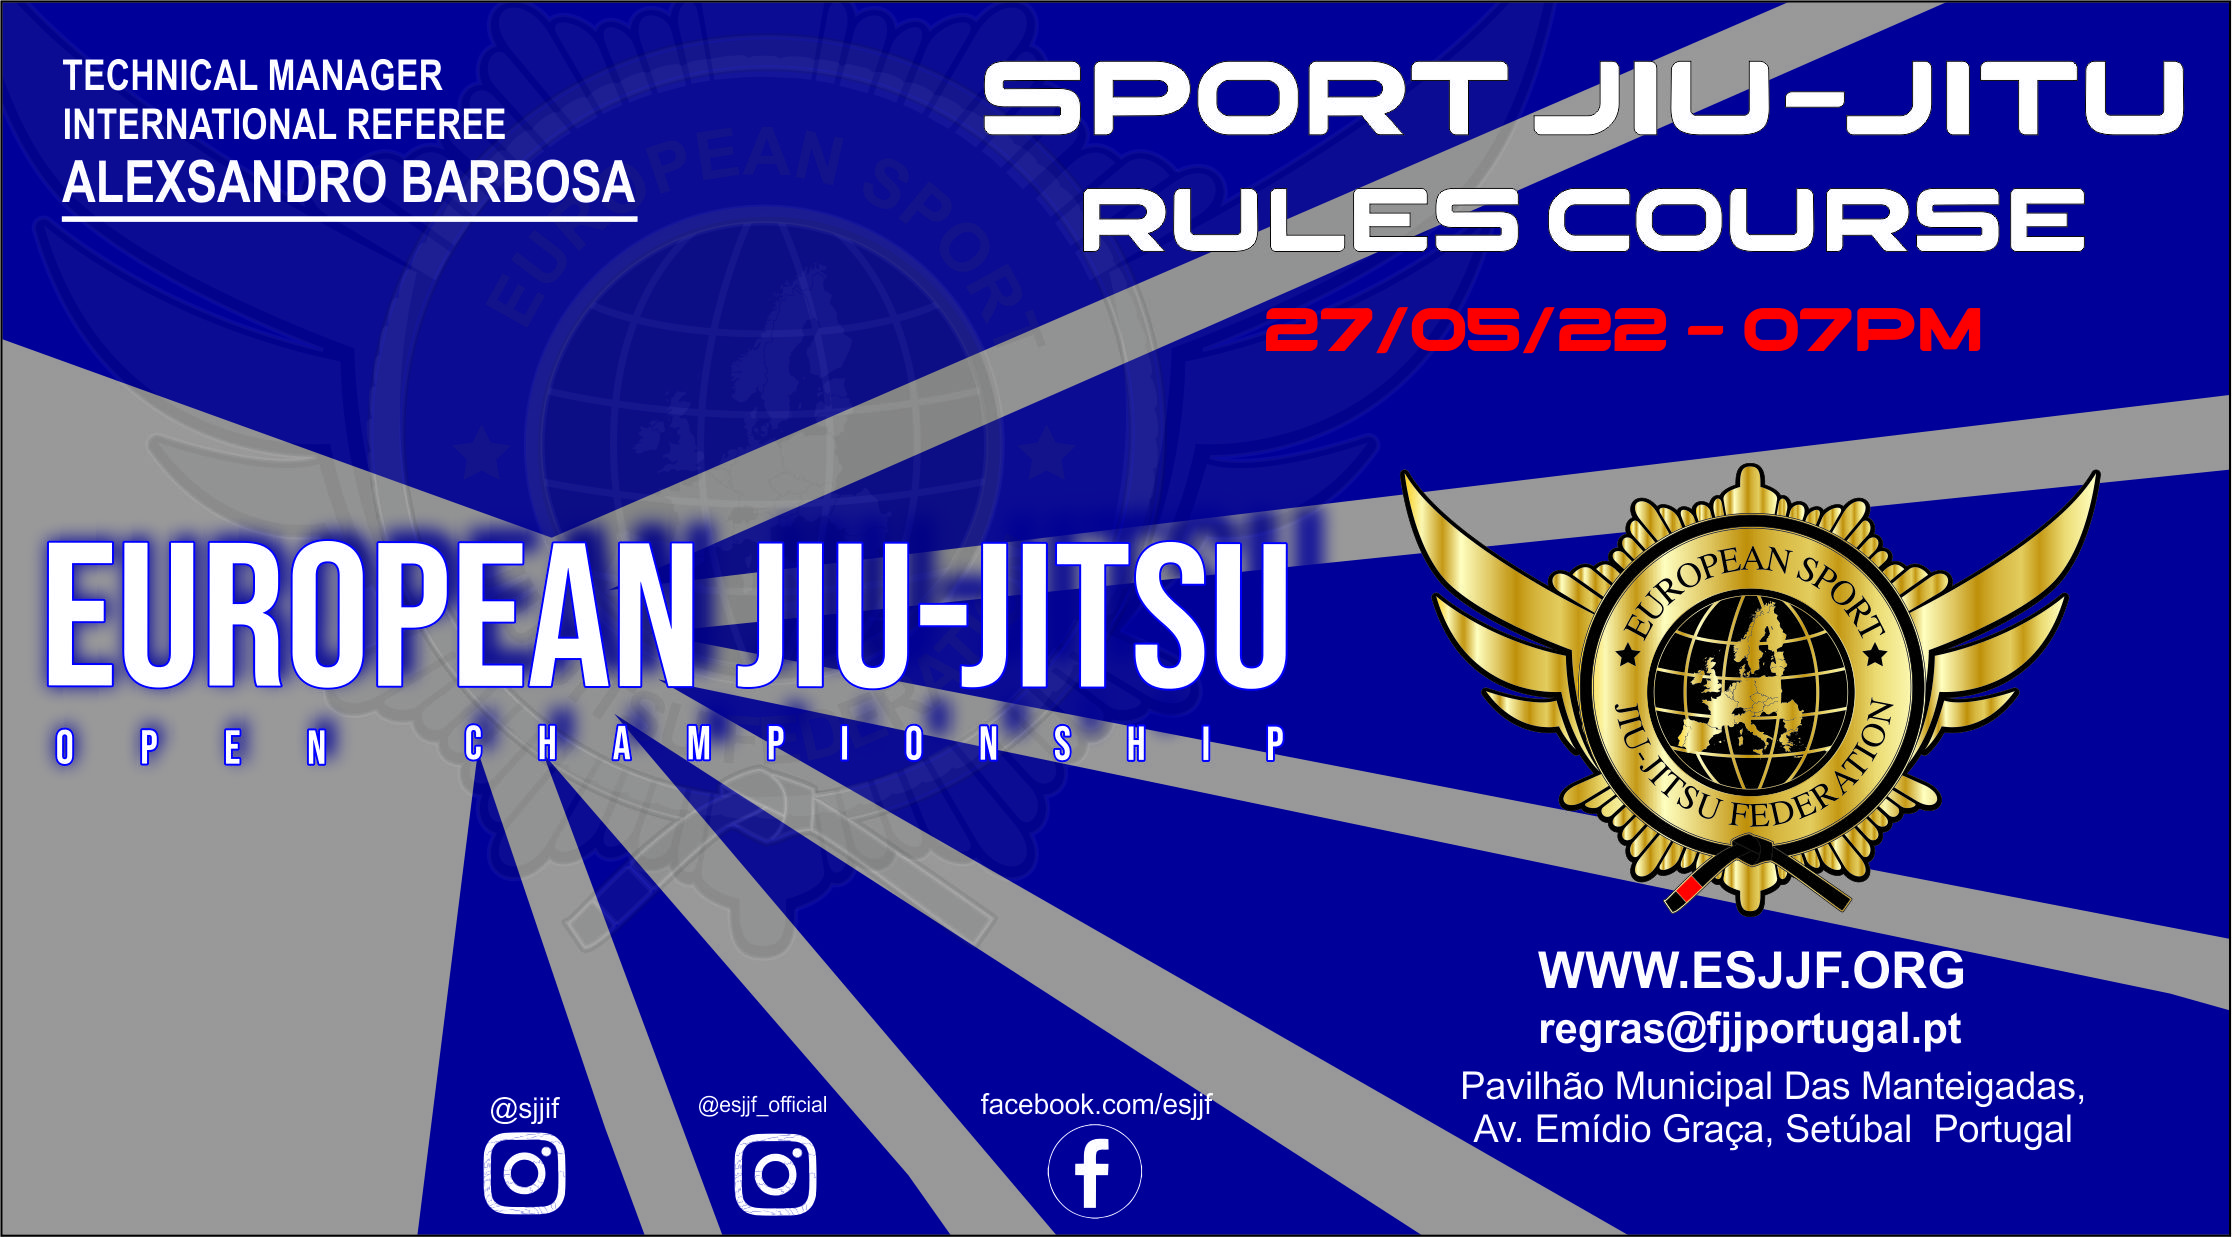 sport jiu-jittsu rules course portugal